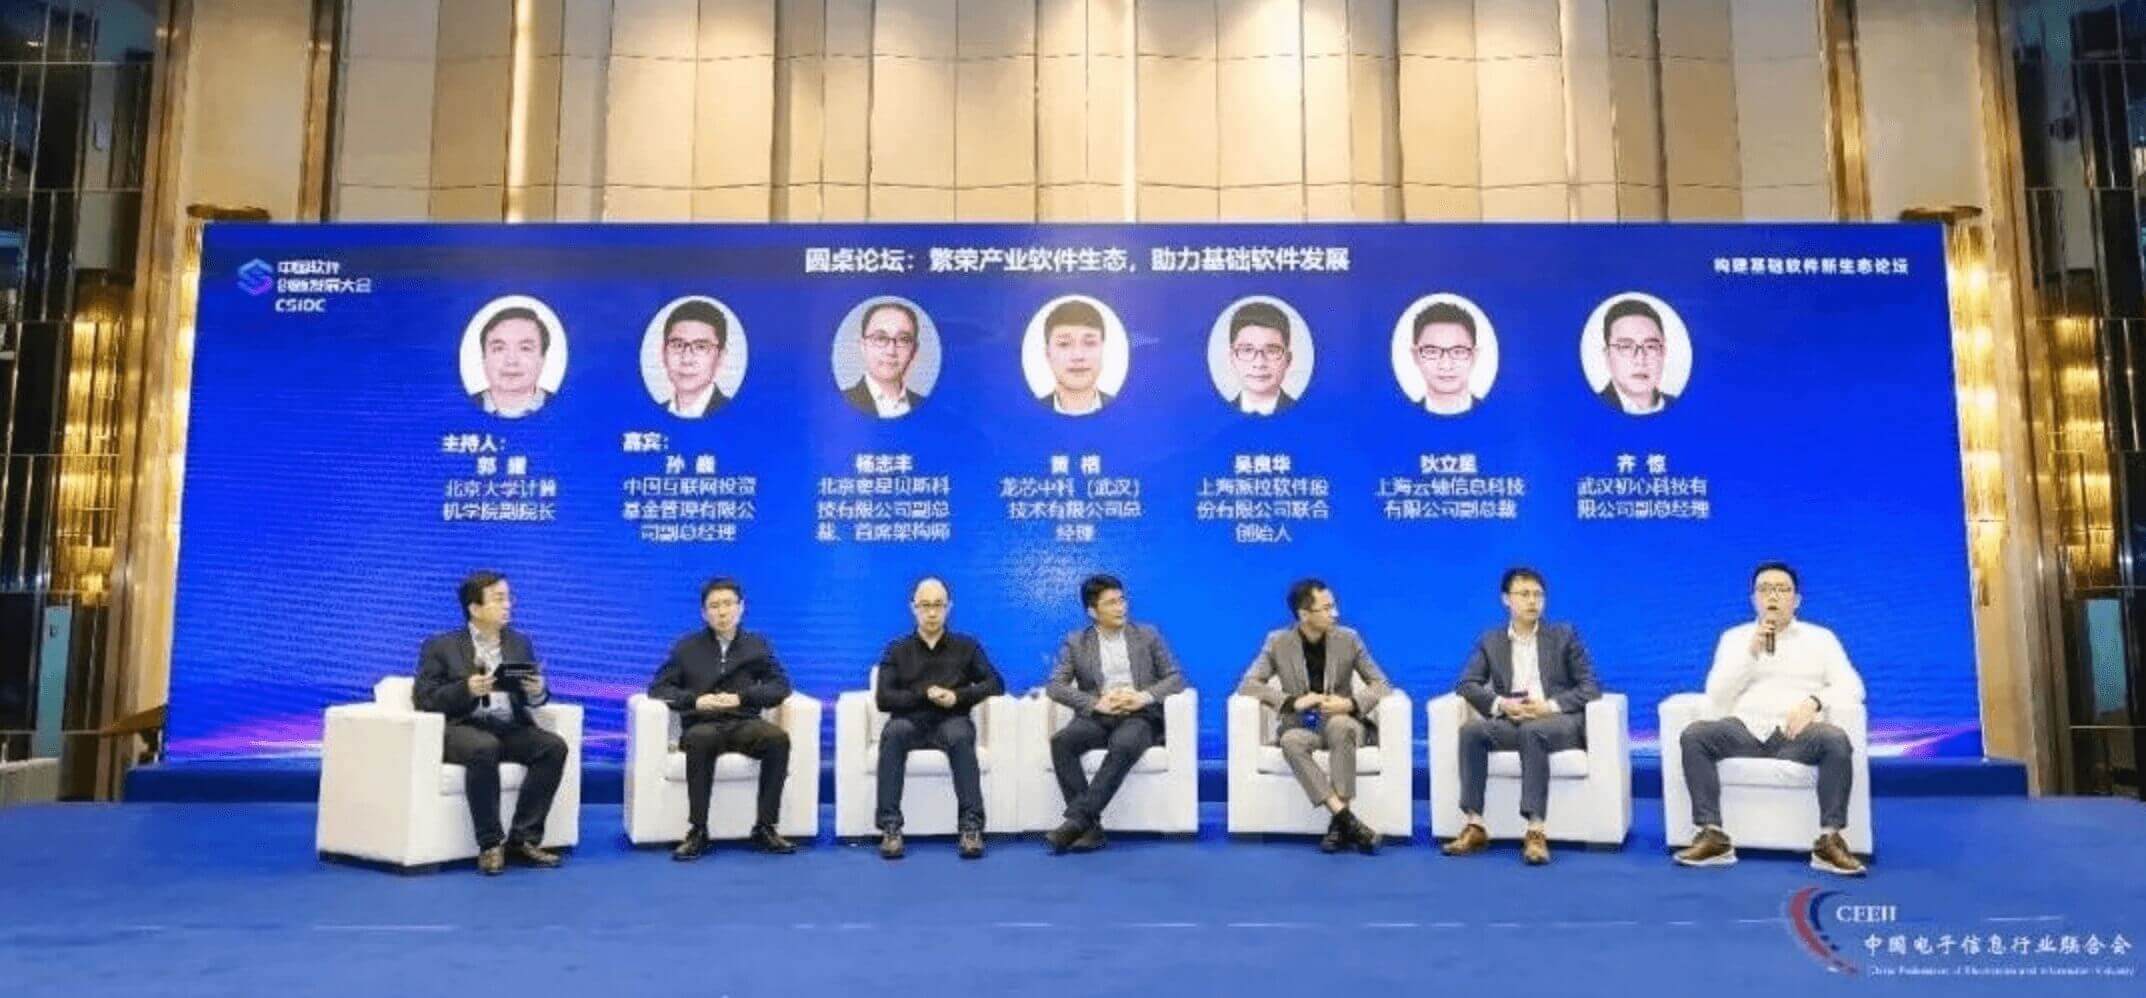 派拉软件受邀出席首届中国软件创新发展大会，与众院士大咖共话中国软件新发展